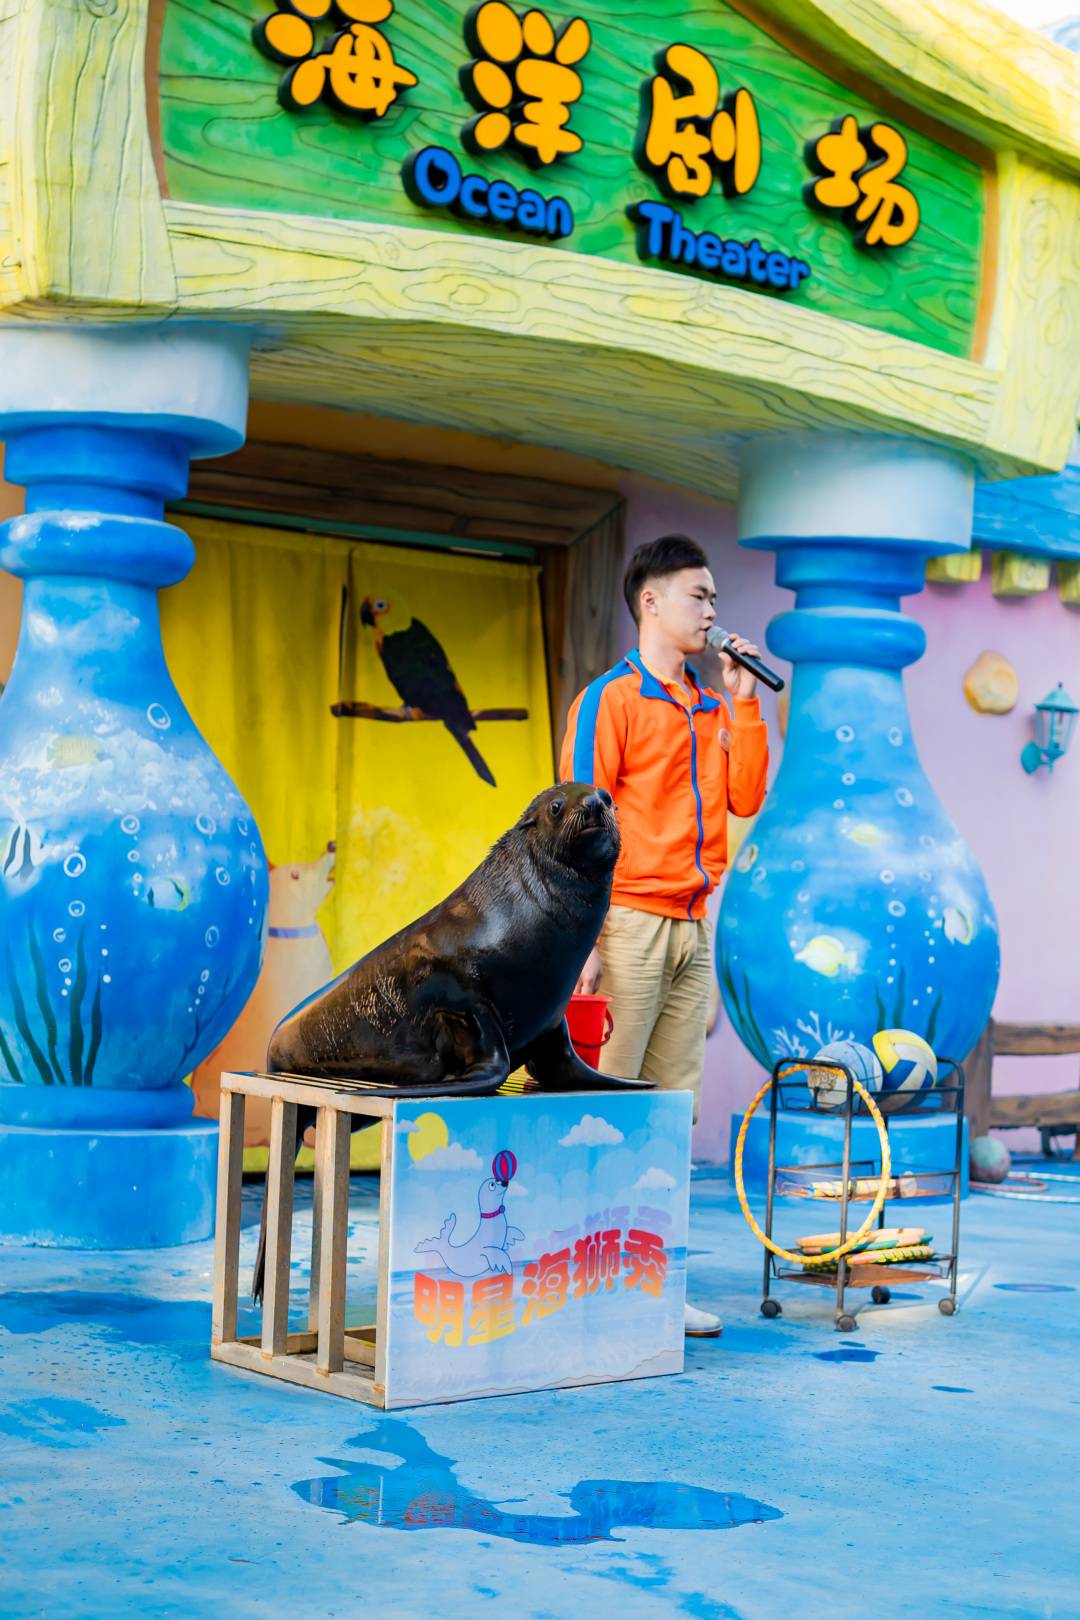 【7-8月特惠】广州融创明星动物园双人票，购买后次日－8月31日入园一次